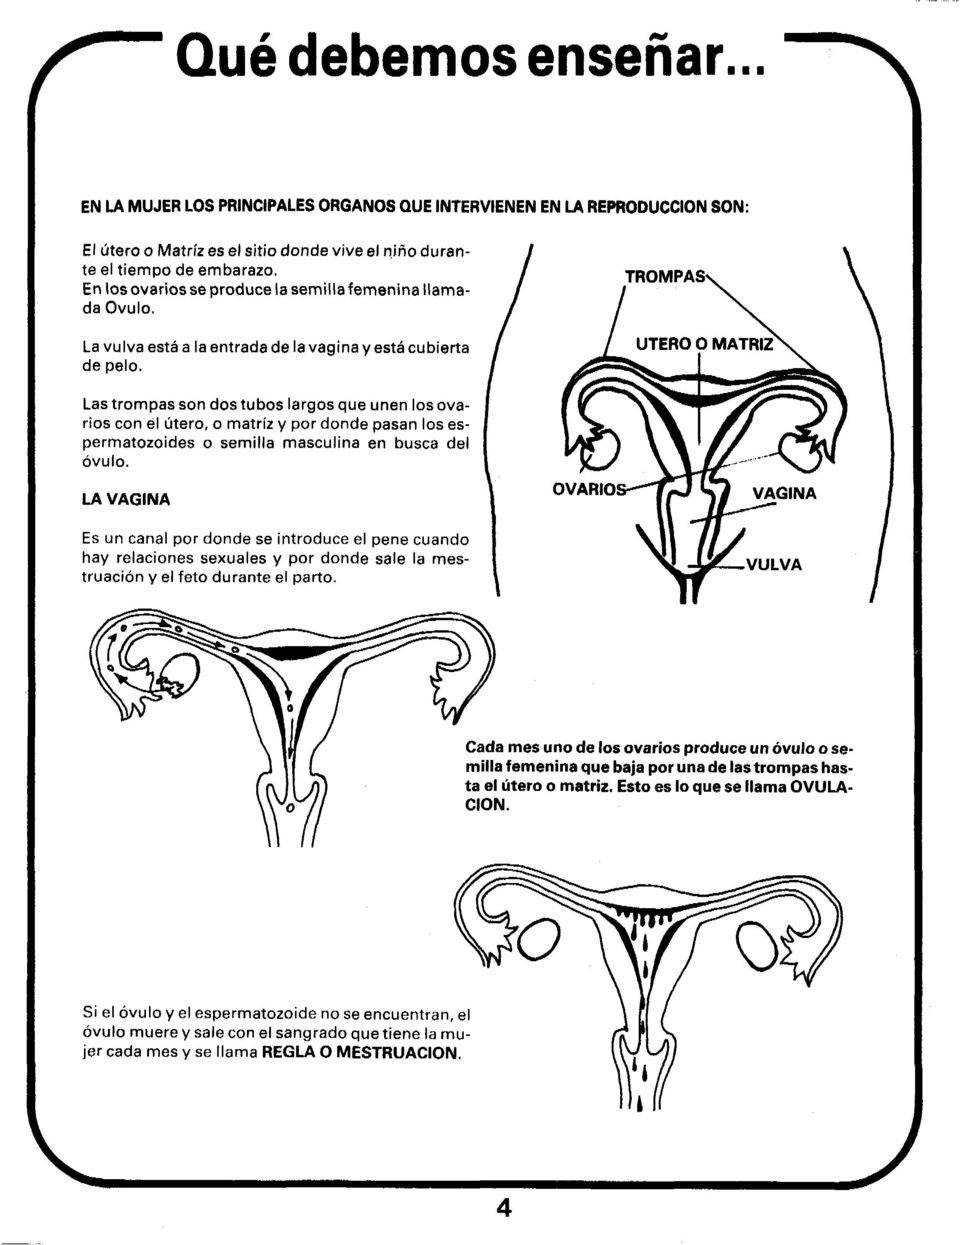 Las trompas son dos tubos largos que unen los ovarios con él útero, o matriz y por donde pasan los espermatozoides o semilla masculina en busca del óvulo.